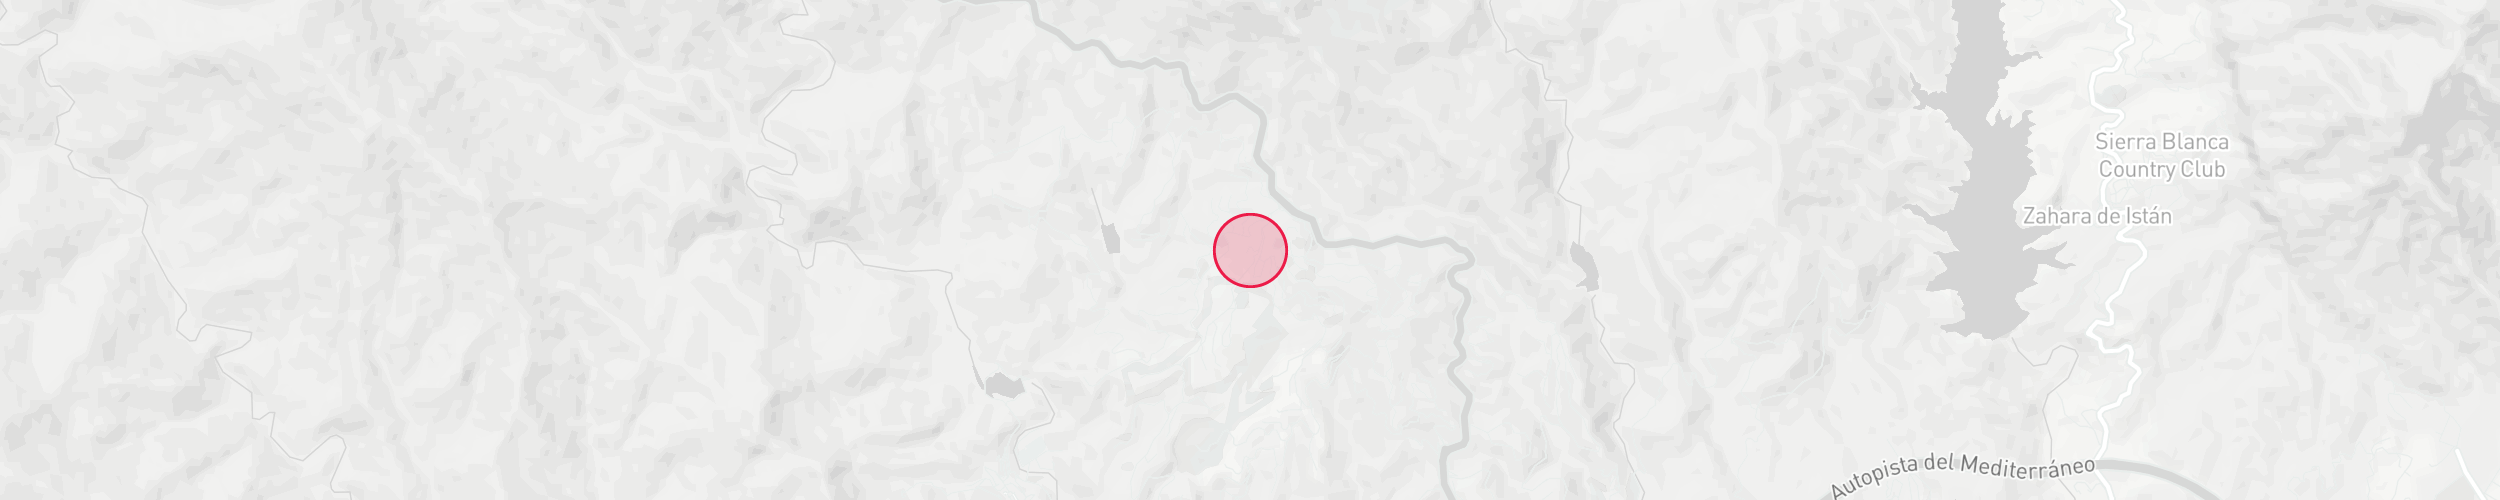 Mapa de localización de la propiedad - La Zagaleta